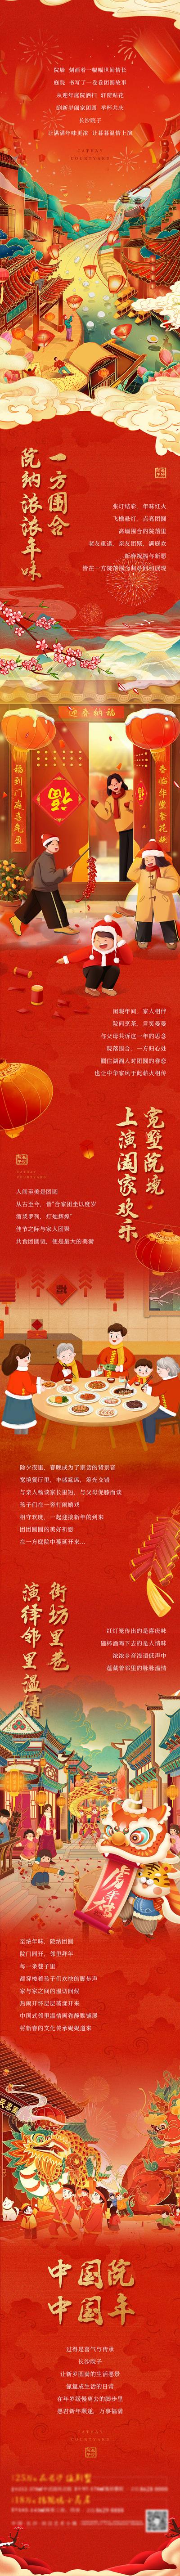 【南门网】专题设计 长图 中国传统节日 春节 新年 返乡 过年 团圆 国潮 红金 插画